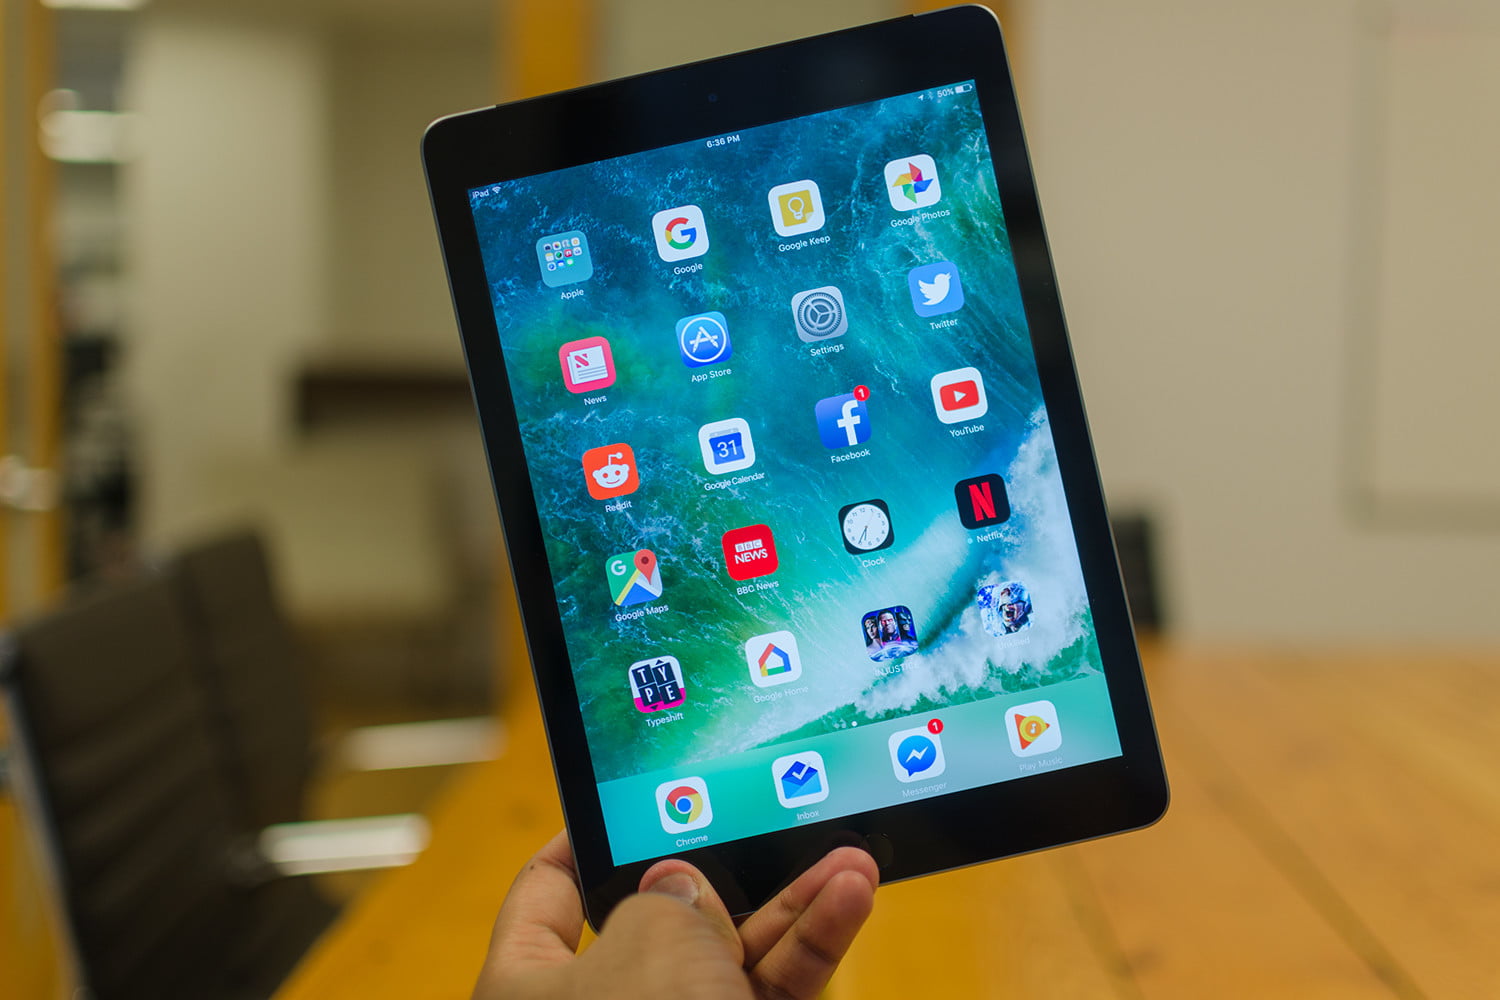 苹果明年拟推新款低价版9.7英寸iPad 售价259美元